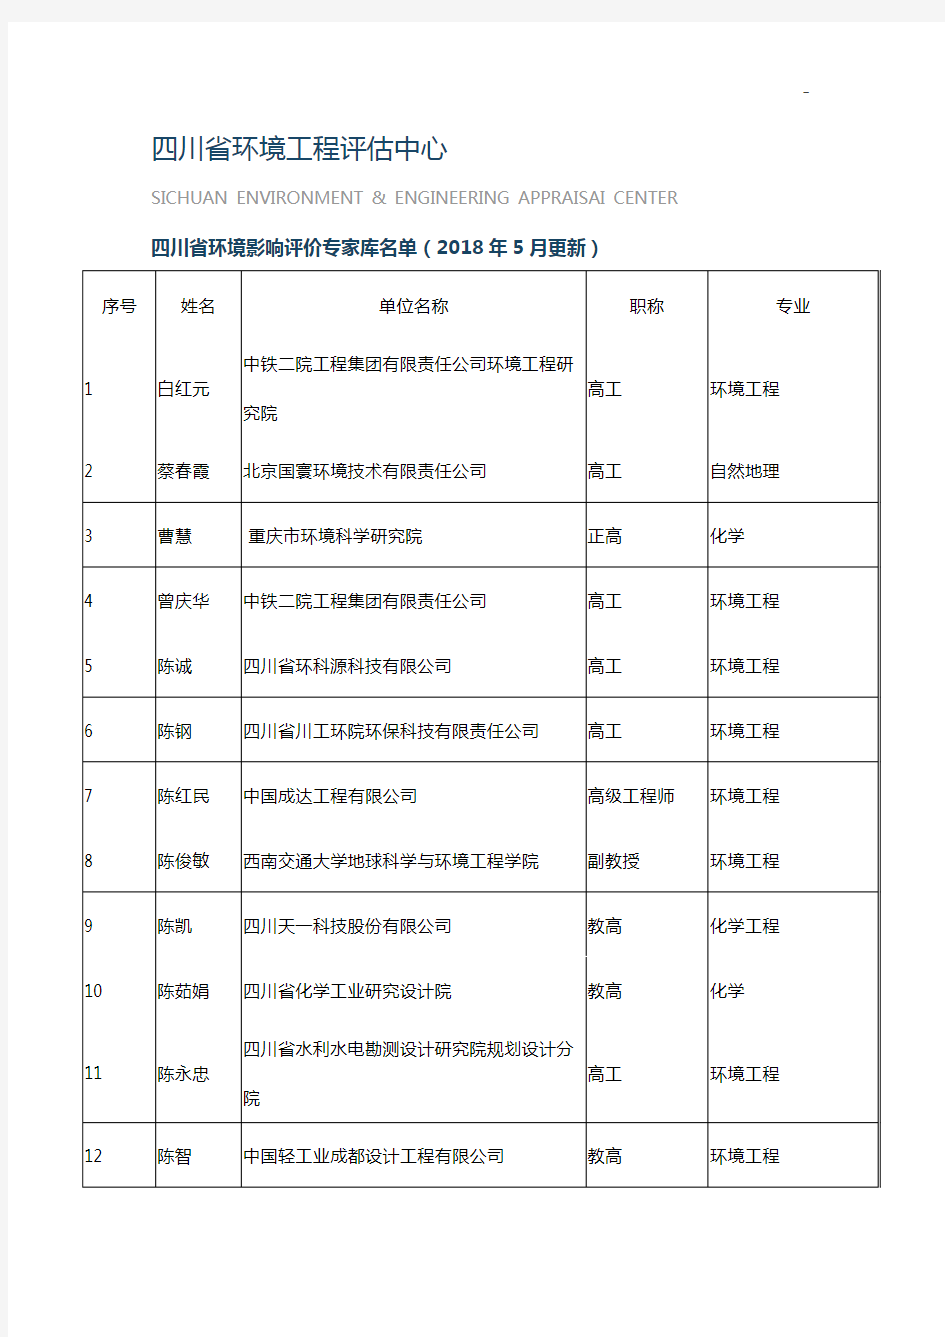 四川地区环境工程评估中心四川地区环评分析专家库名单资料(2018年度5月更新)